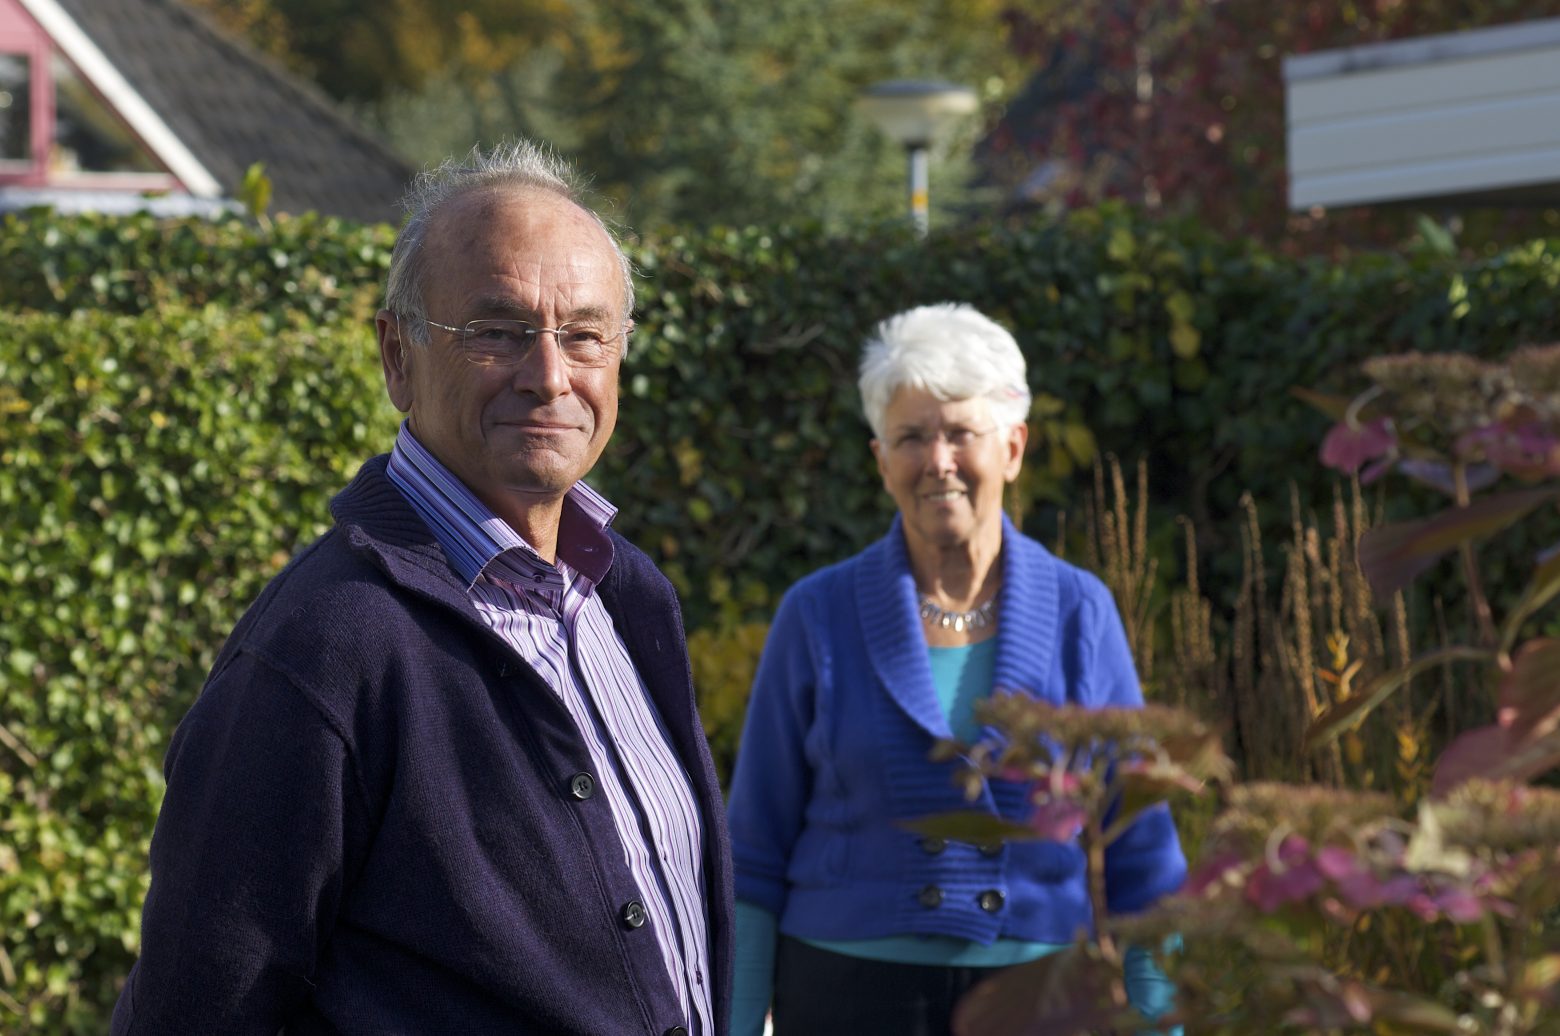 Twee oudere mensen staan in een tuin